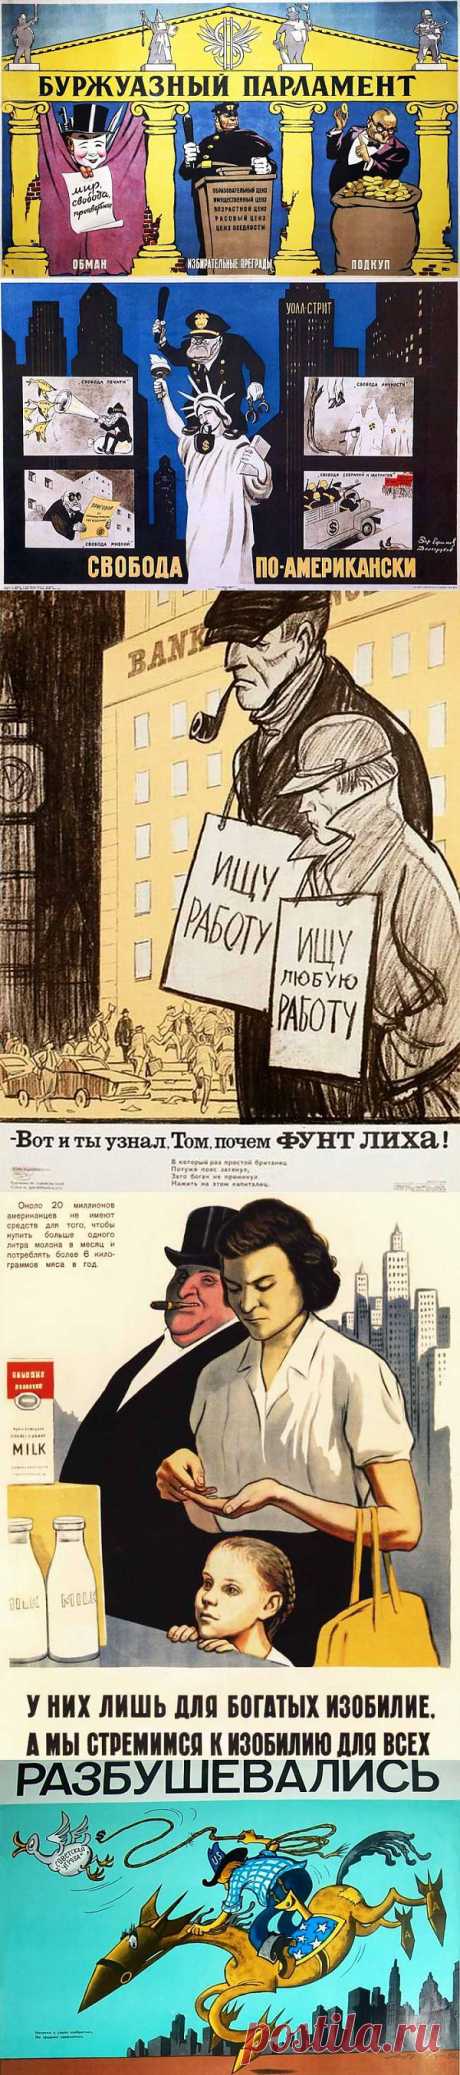 ФотоТелеграф » Советские антиамериканские плакаты 1950-х – 80-х годов